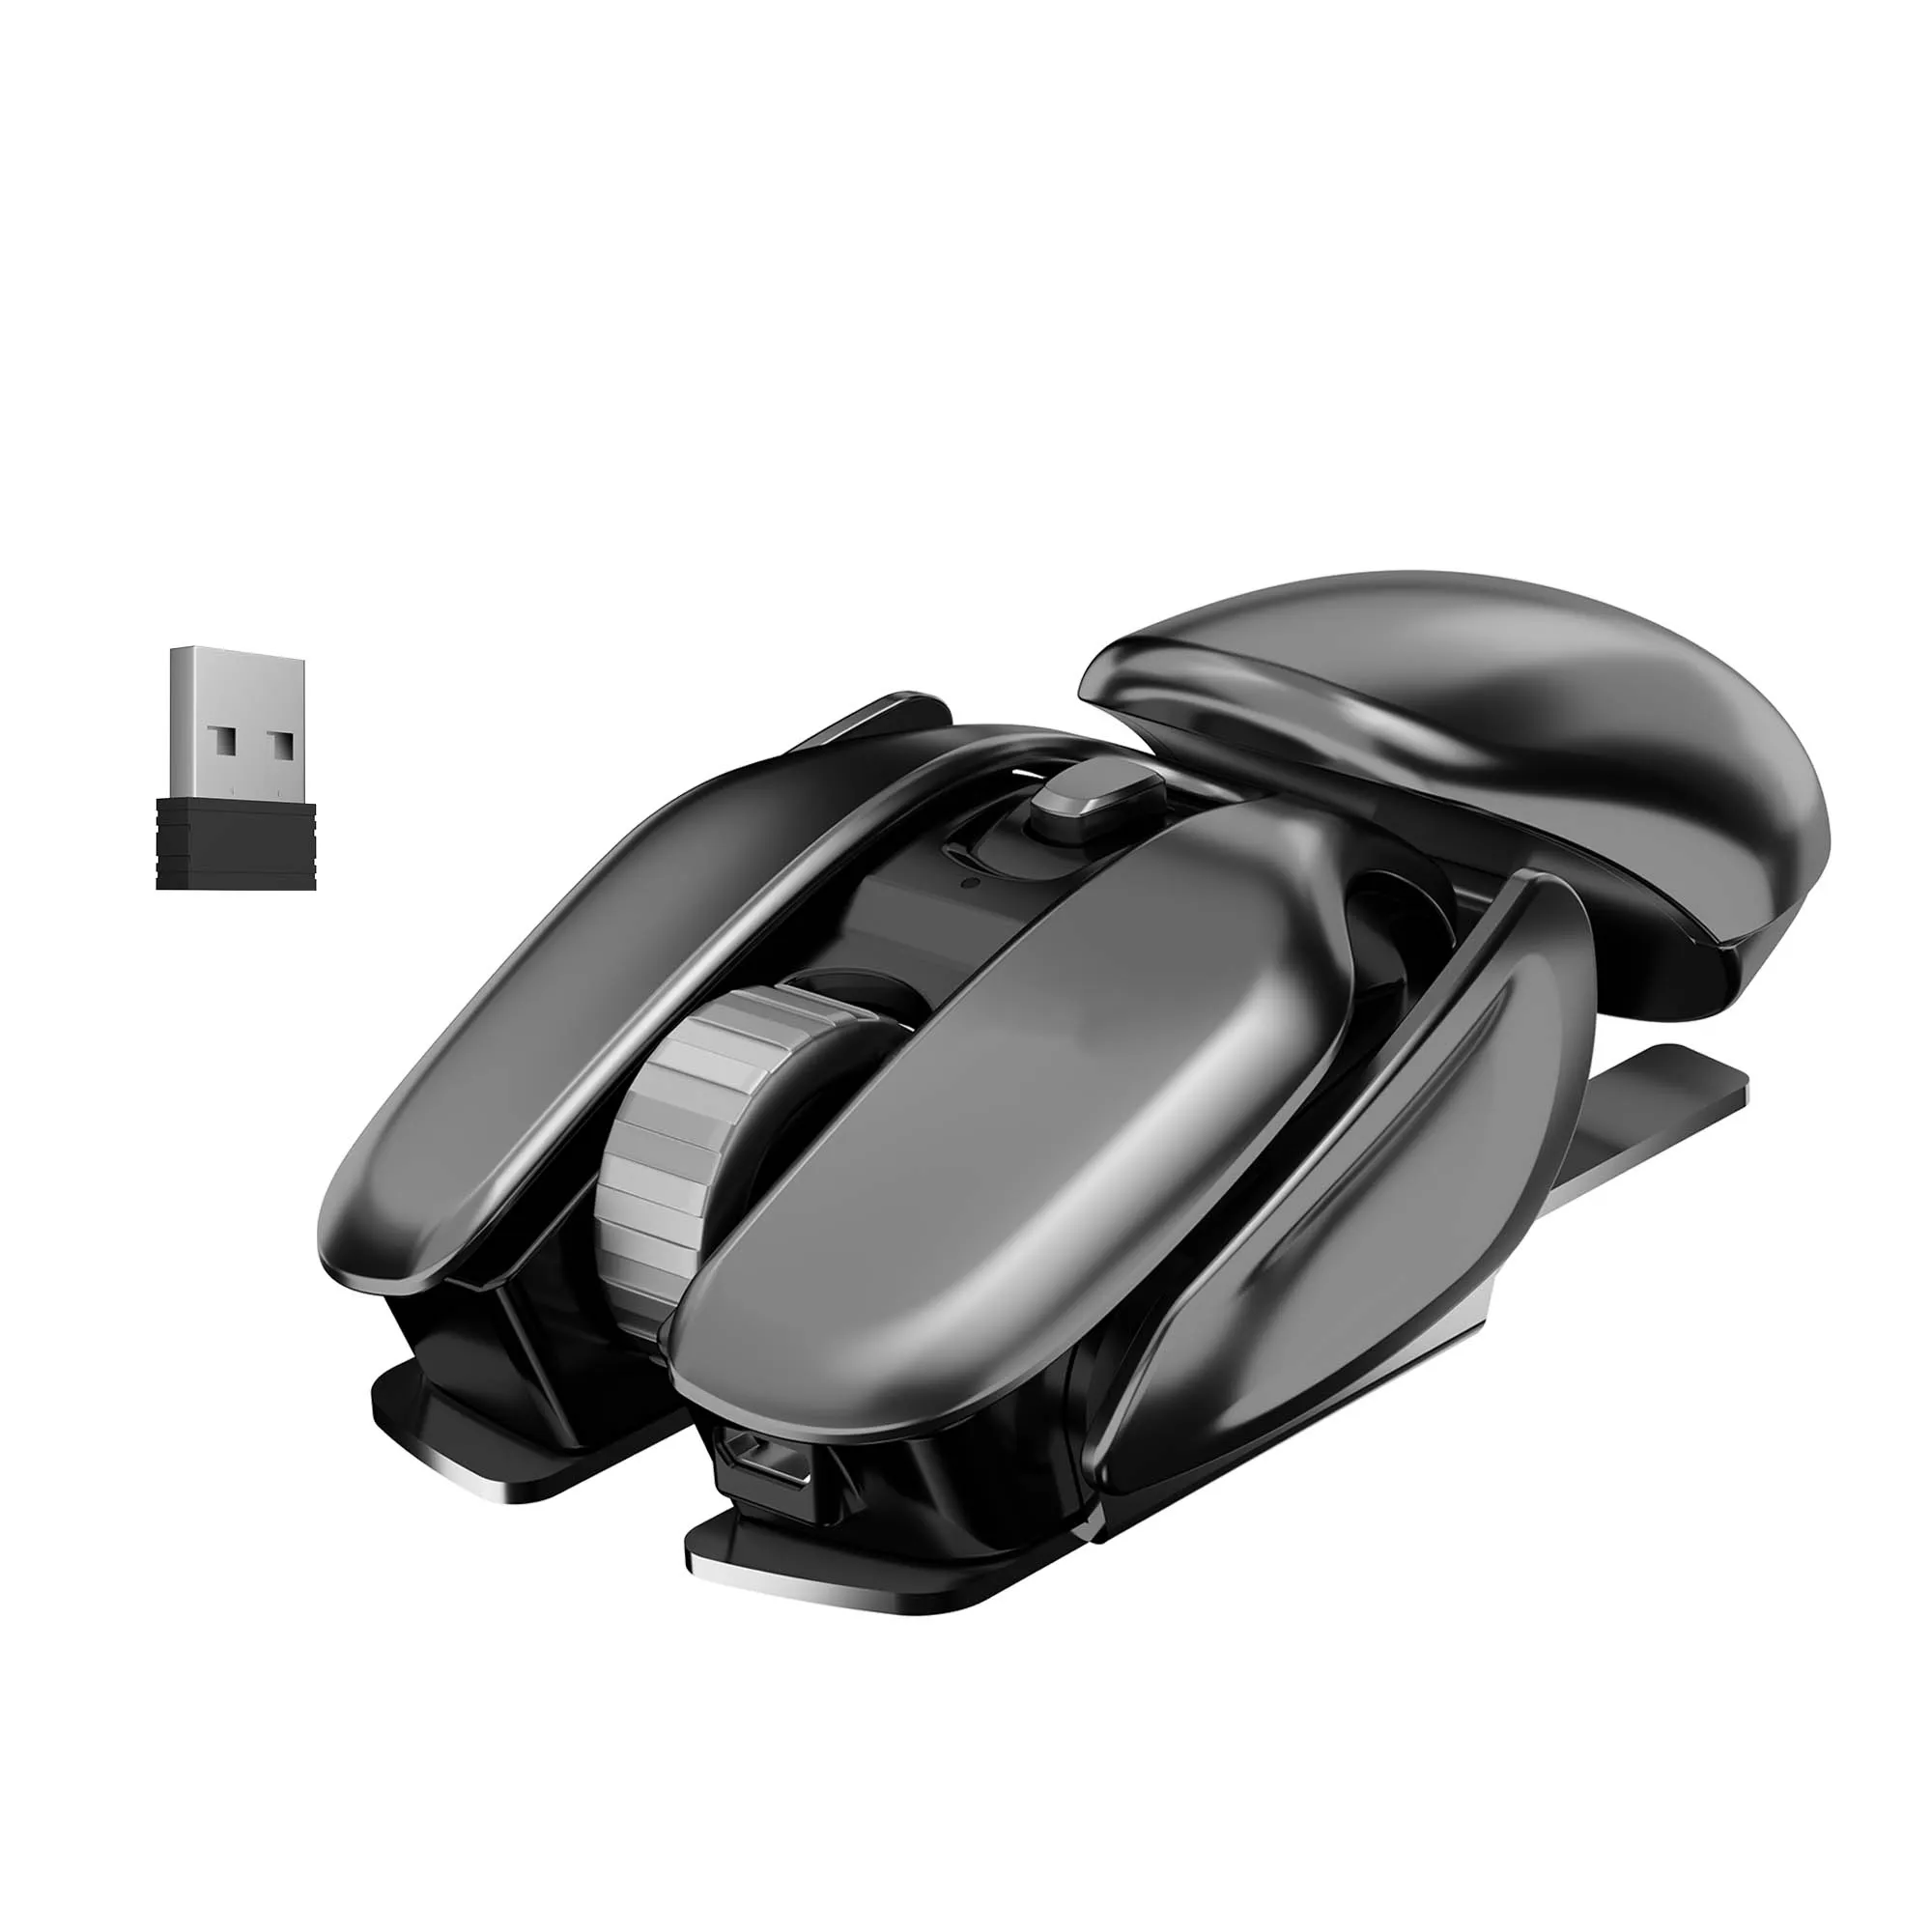 Dancesoul Auto Sleep 2,4 GHz draadloze muis Ergonomische Alien Look Mouse Metal Mouse voor PC -laptop met USB -ontvanger